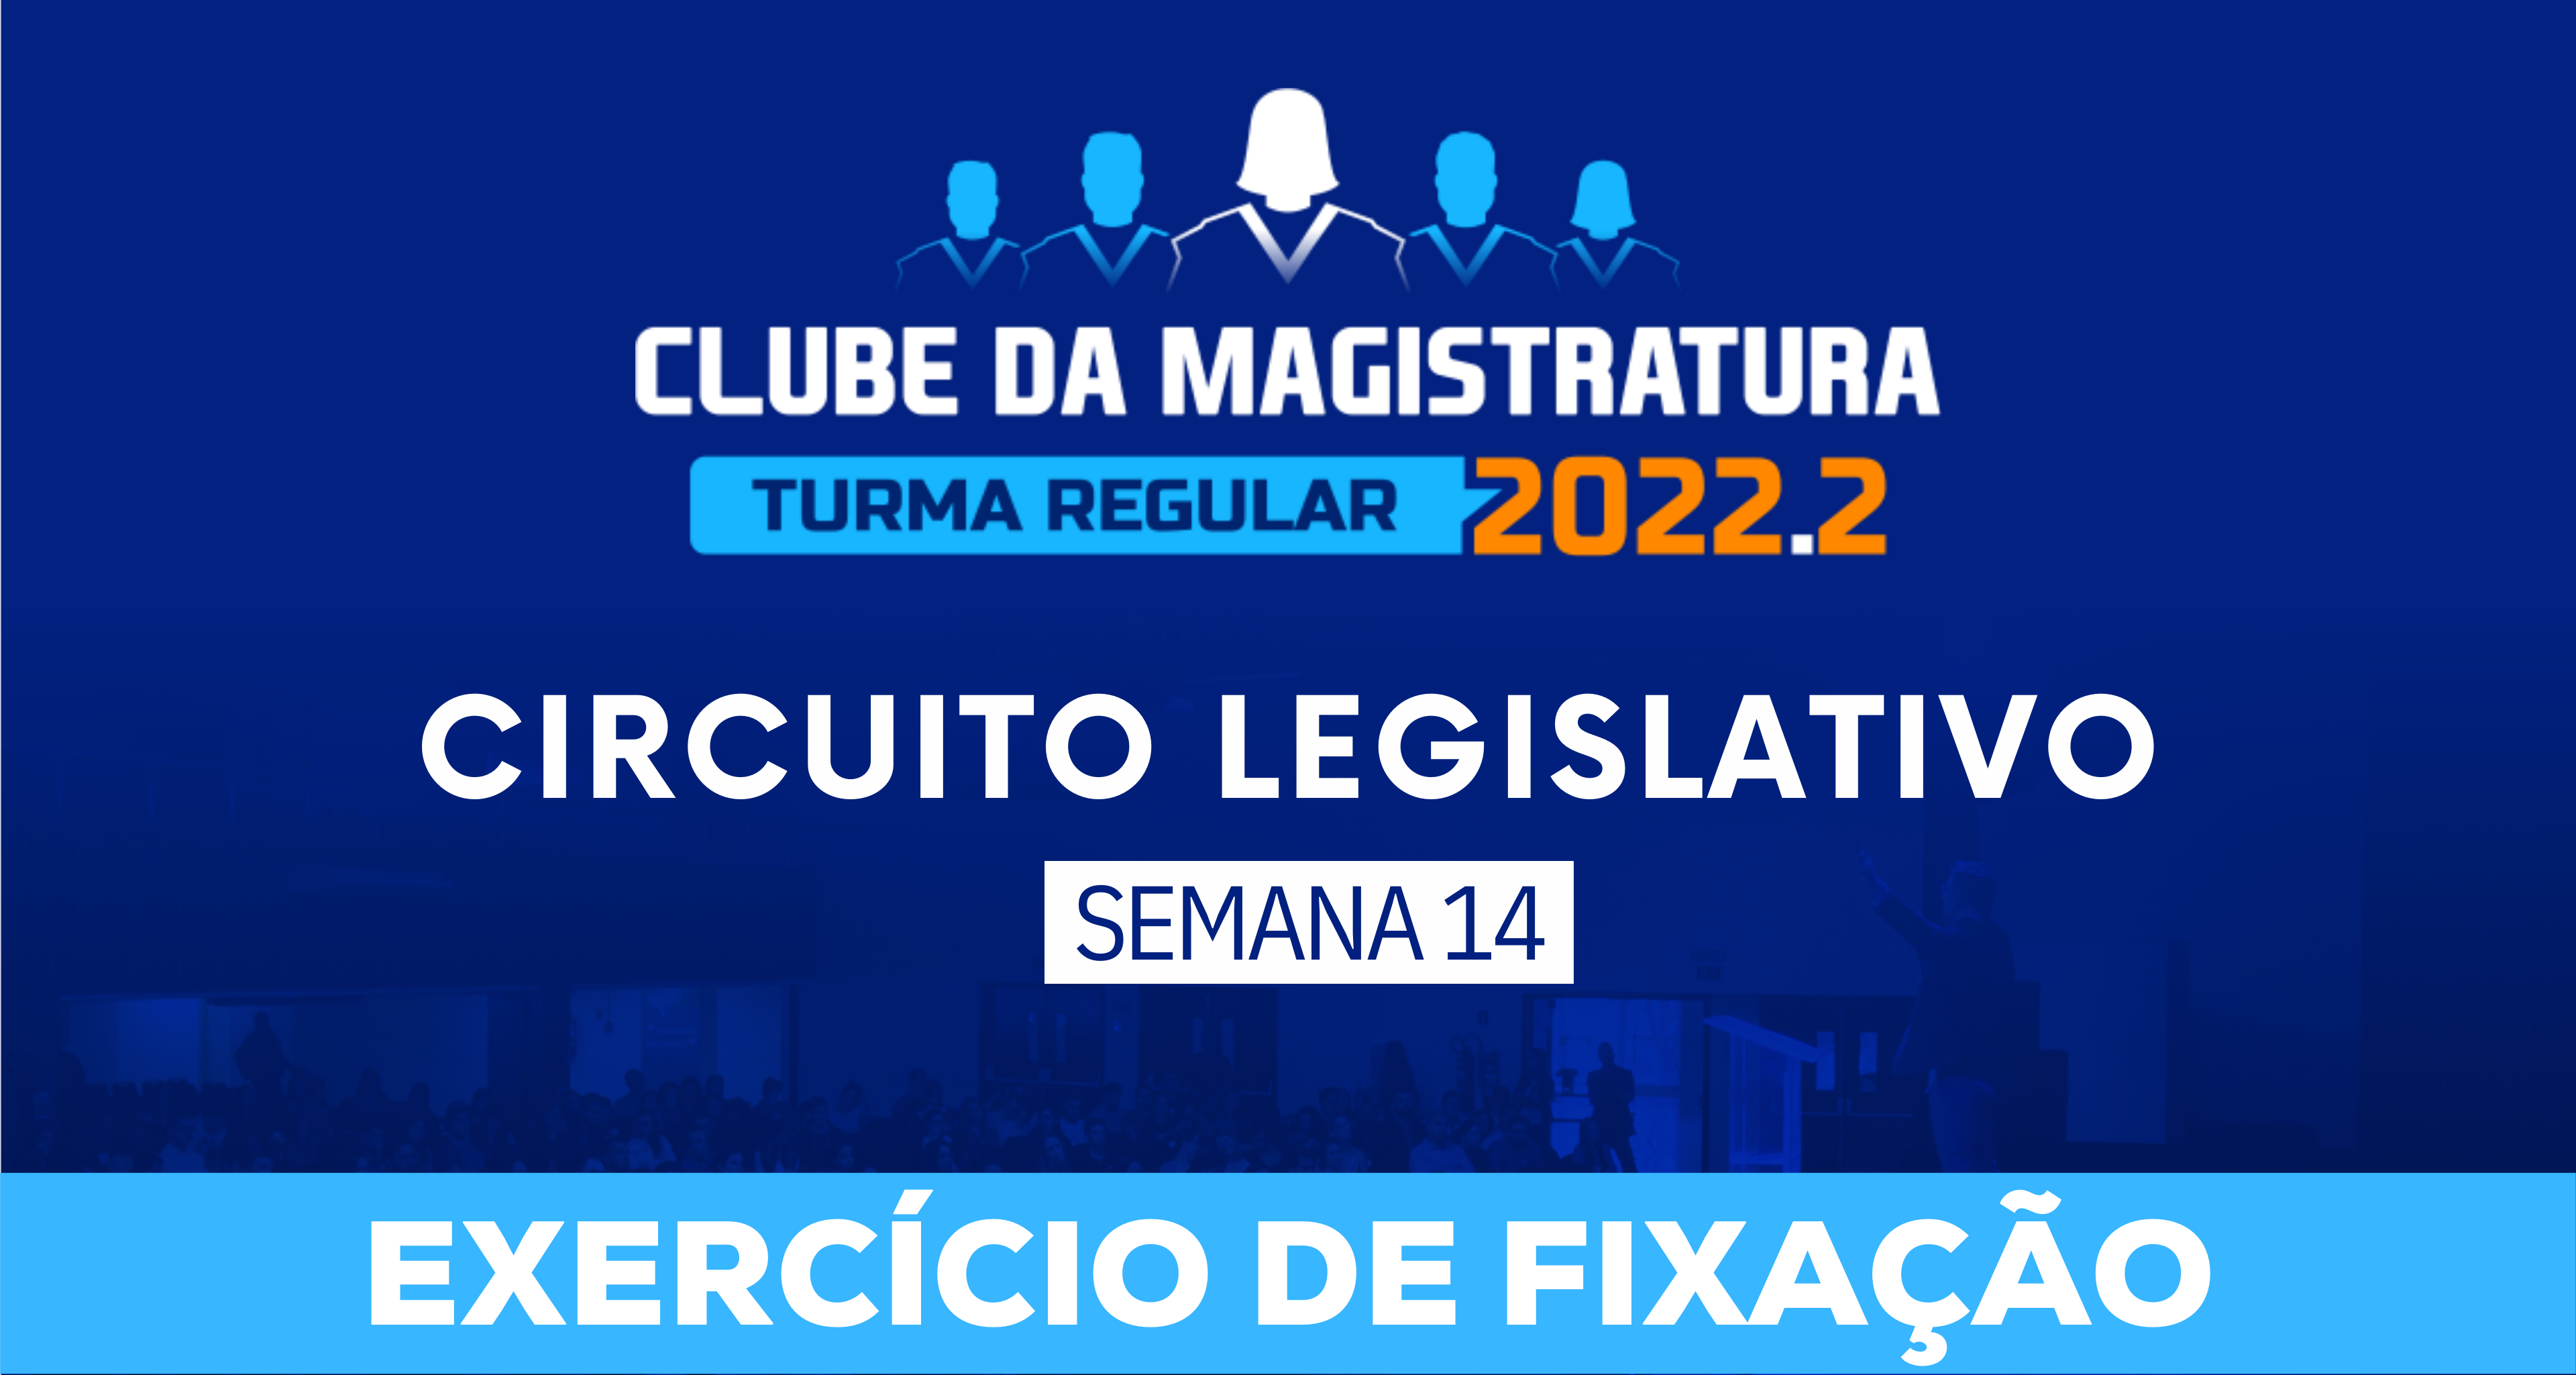 Circuito Legislativo 2022.2 (Clube da Magistratura - Semana 14)